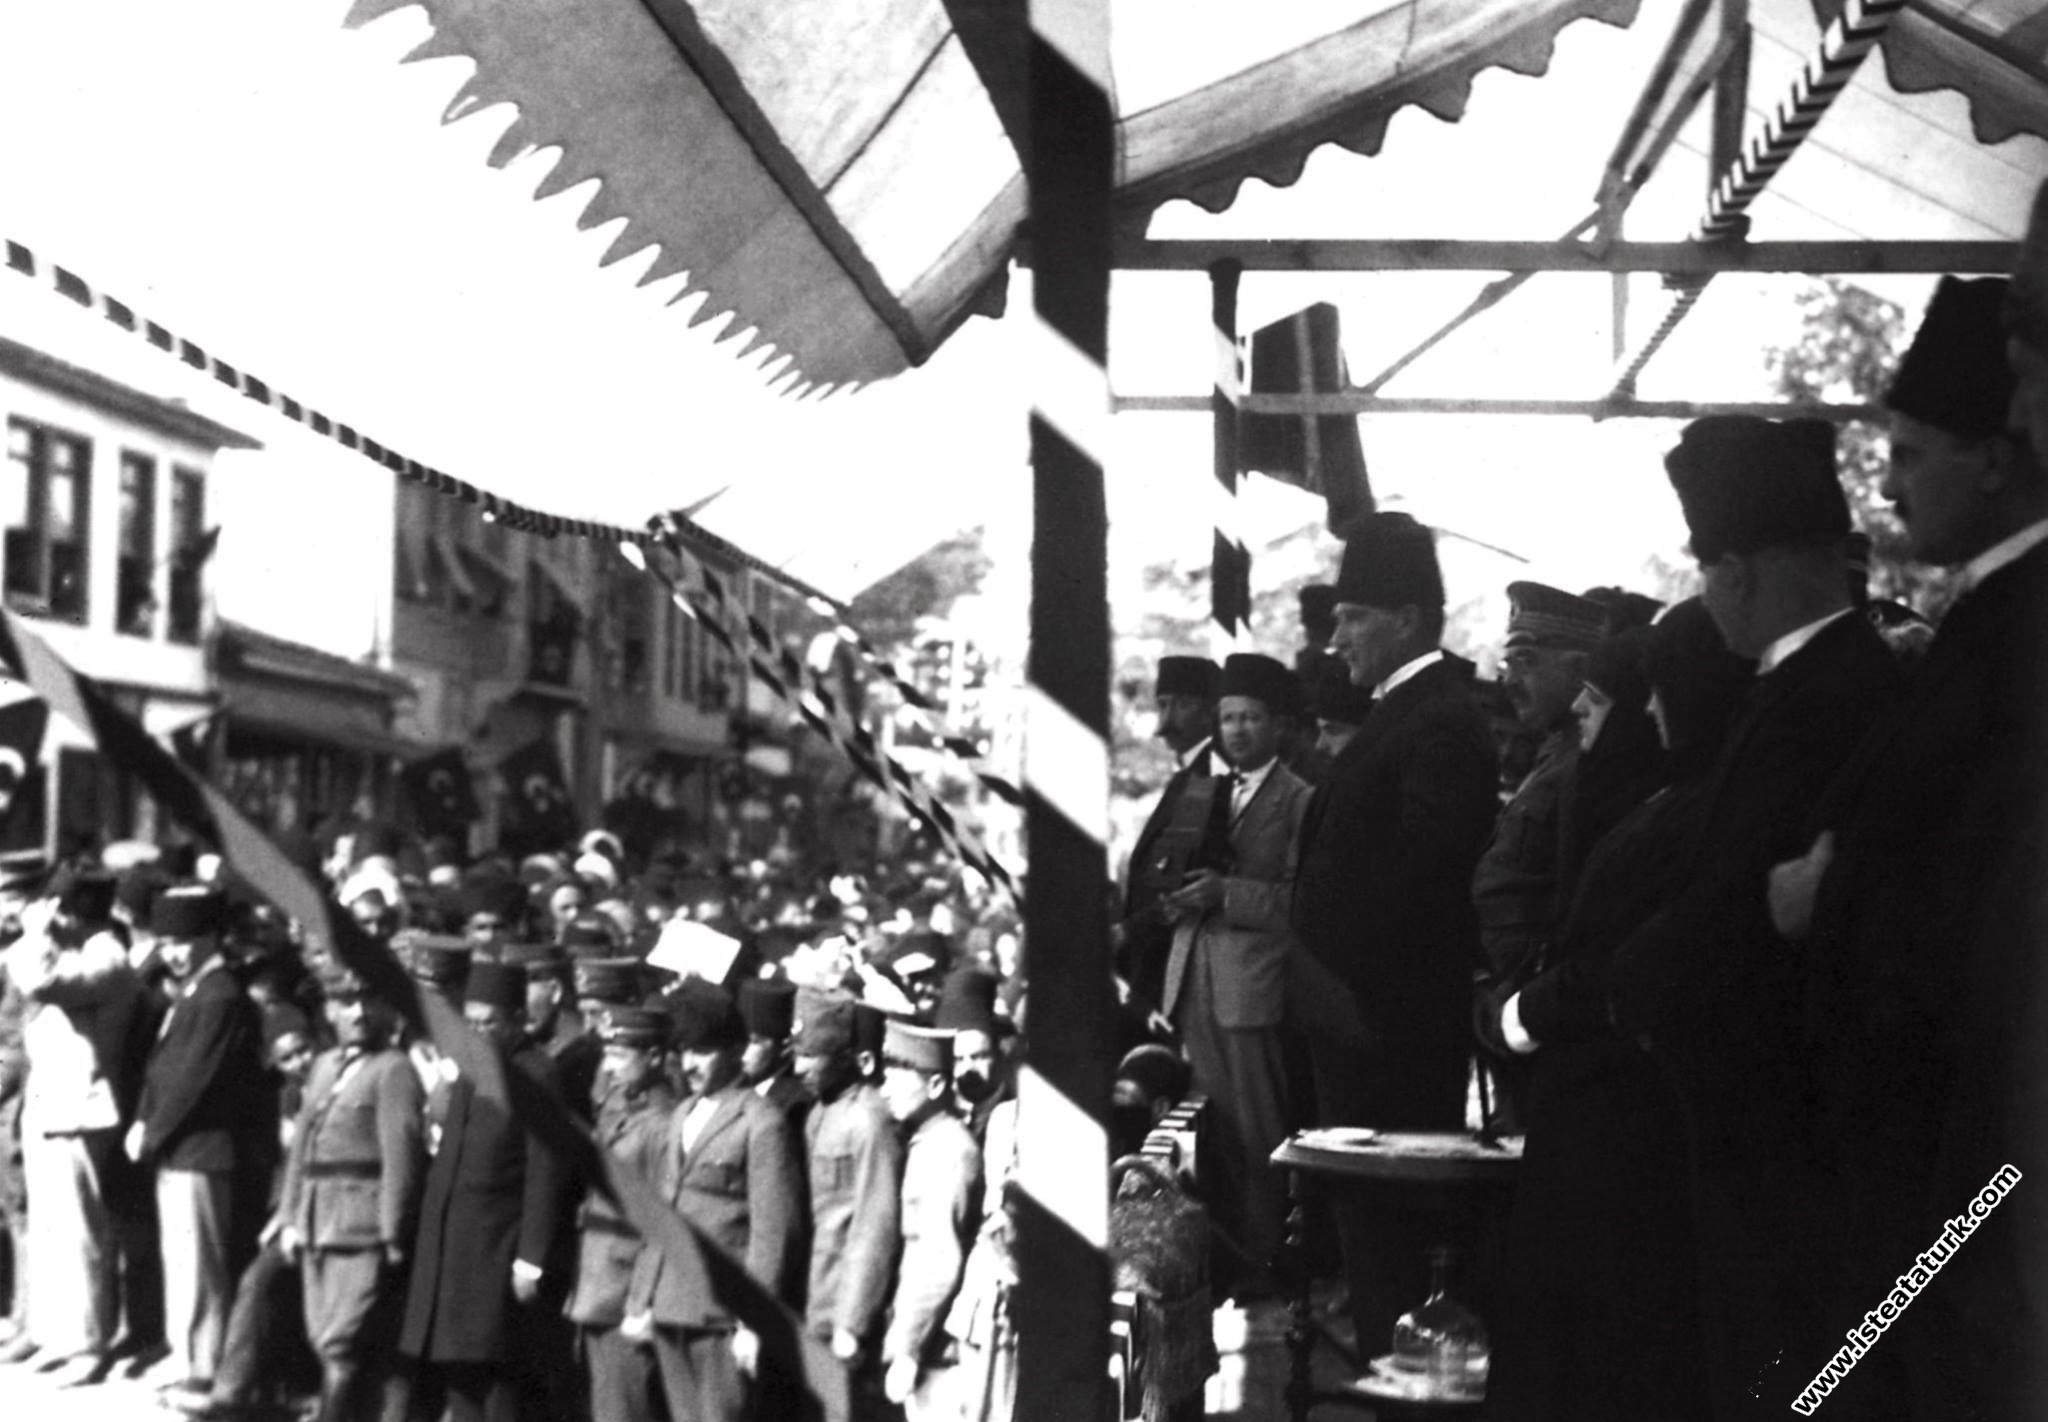 Cumhurbaşkanı Gazi Mustafa Kemal, Bursa'nın düşman işgalinden kurtuluşunun II. yıl dönümünde Bursa'lılara hitap ederken. (11.09.1924)